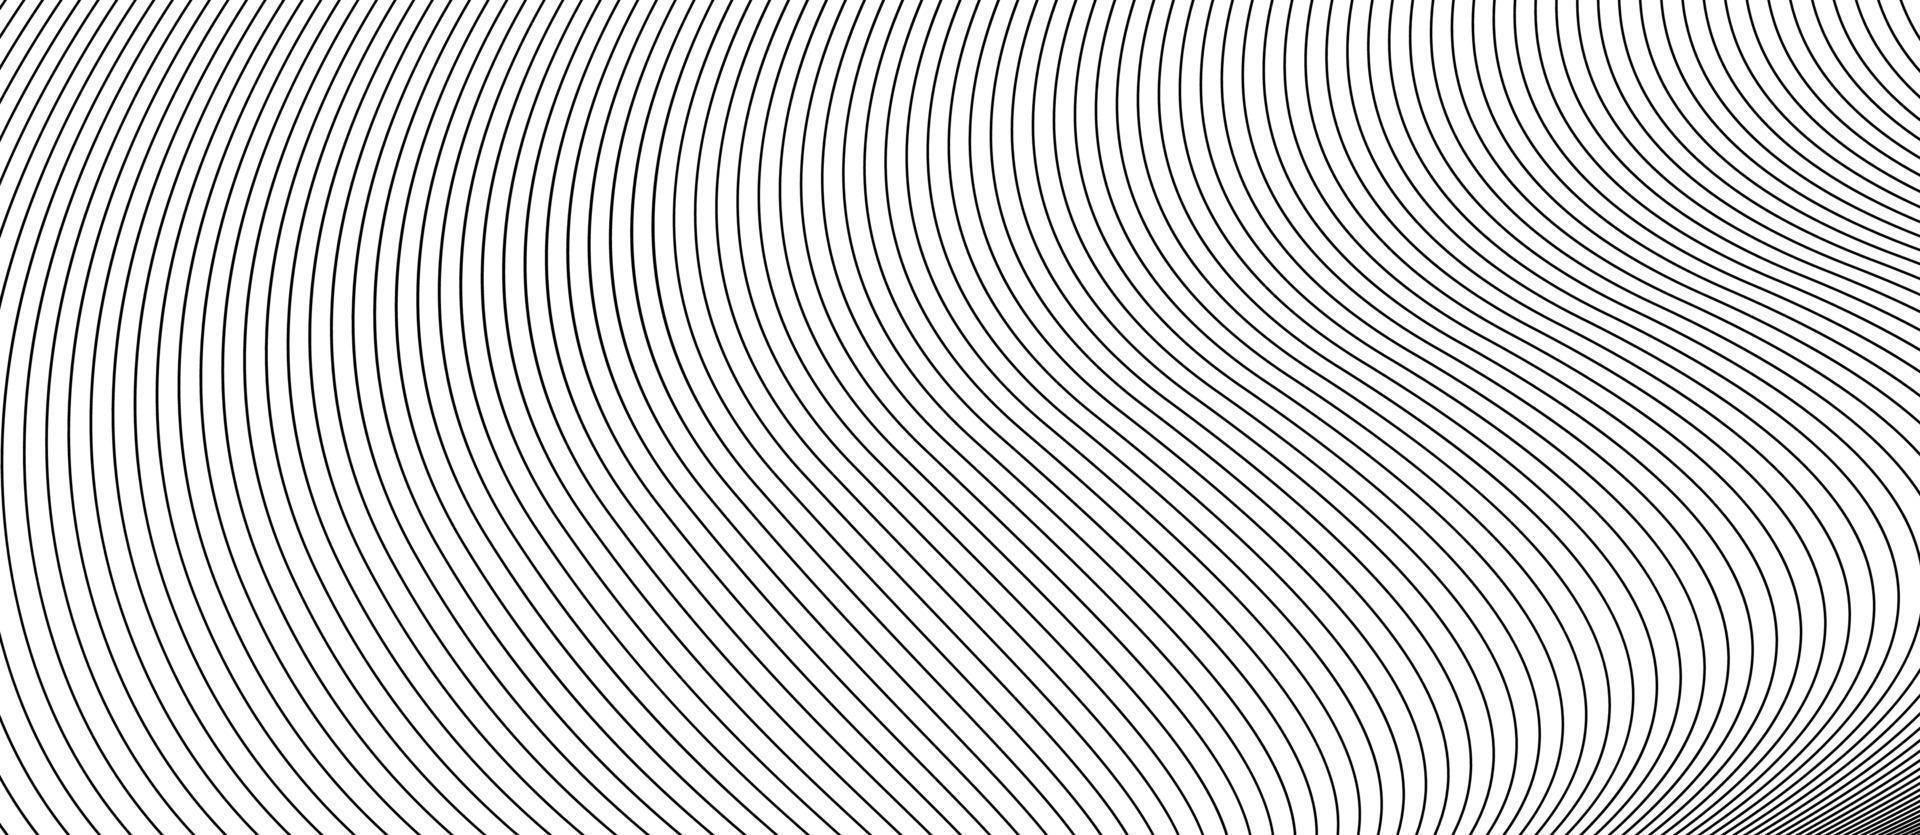 fond blanc et gris avec motif de lignes diagonales vecteur